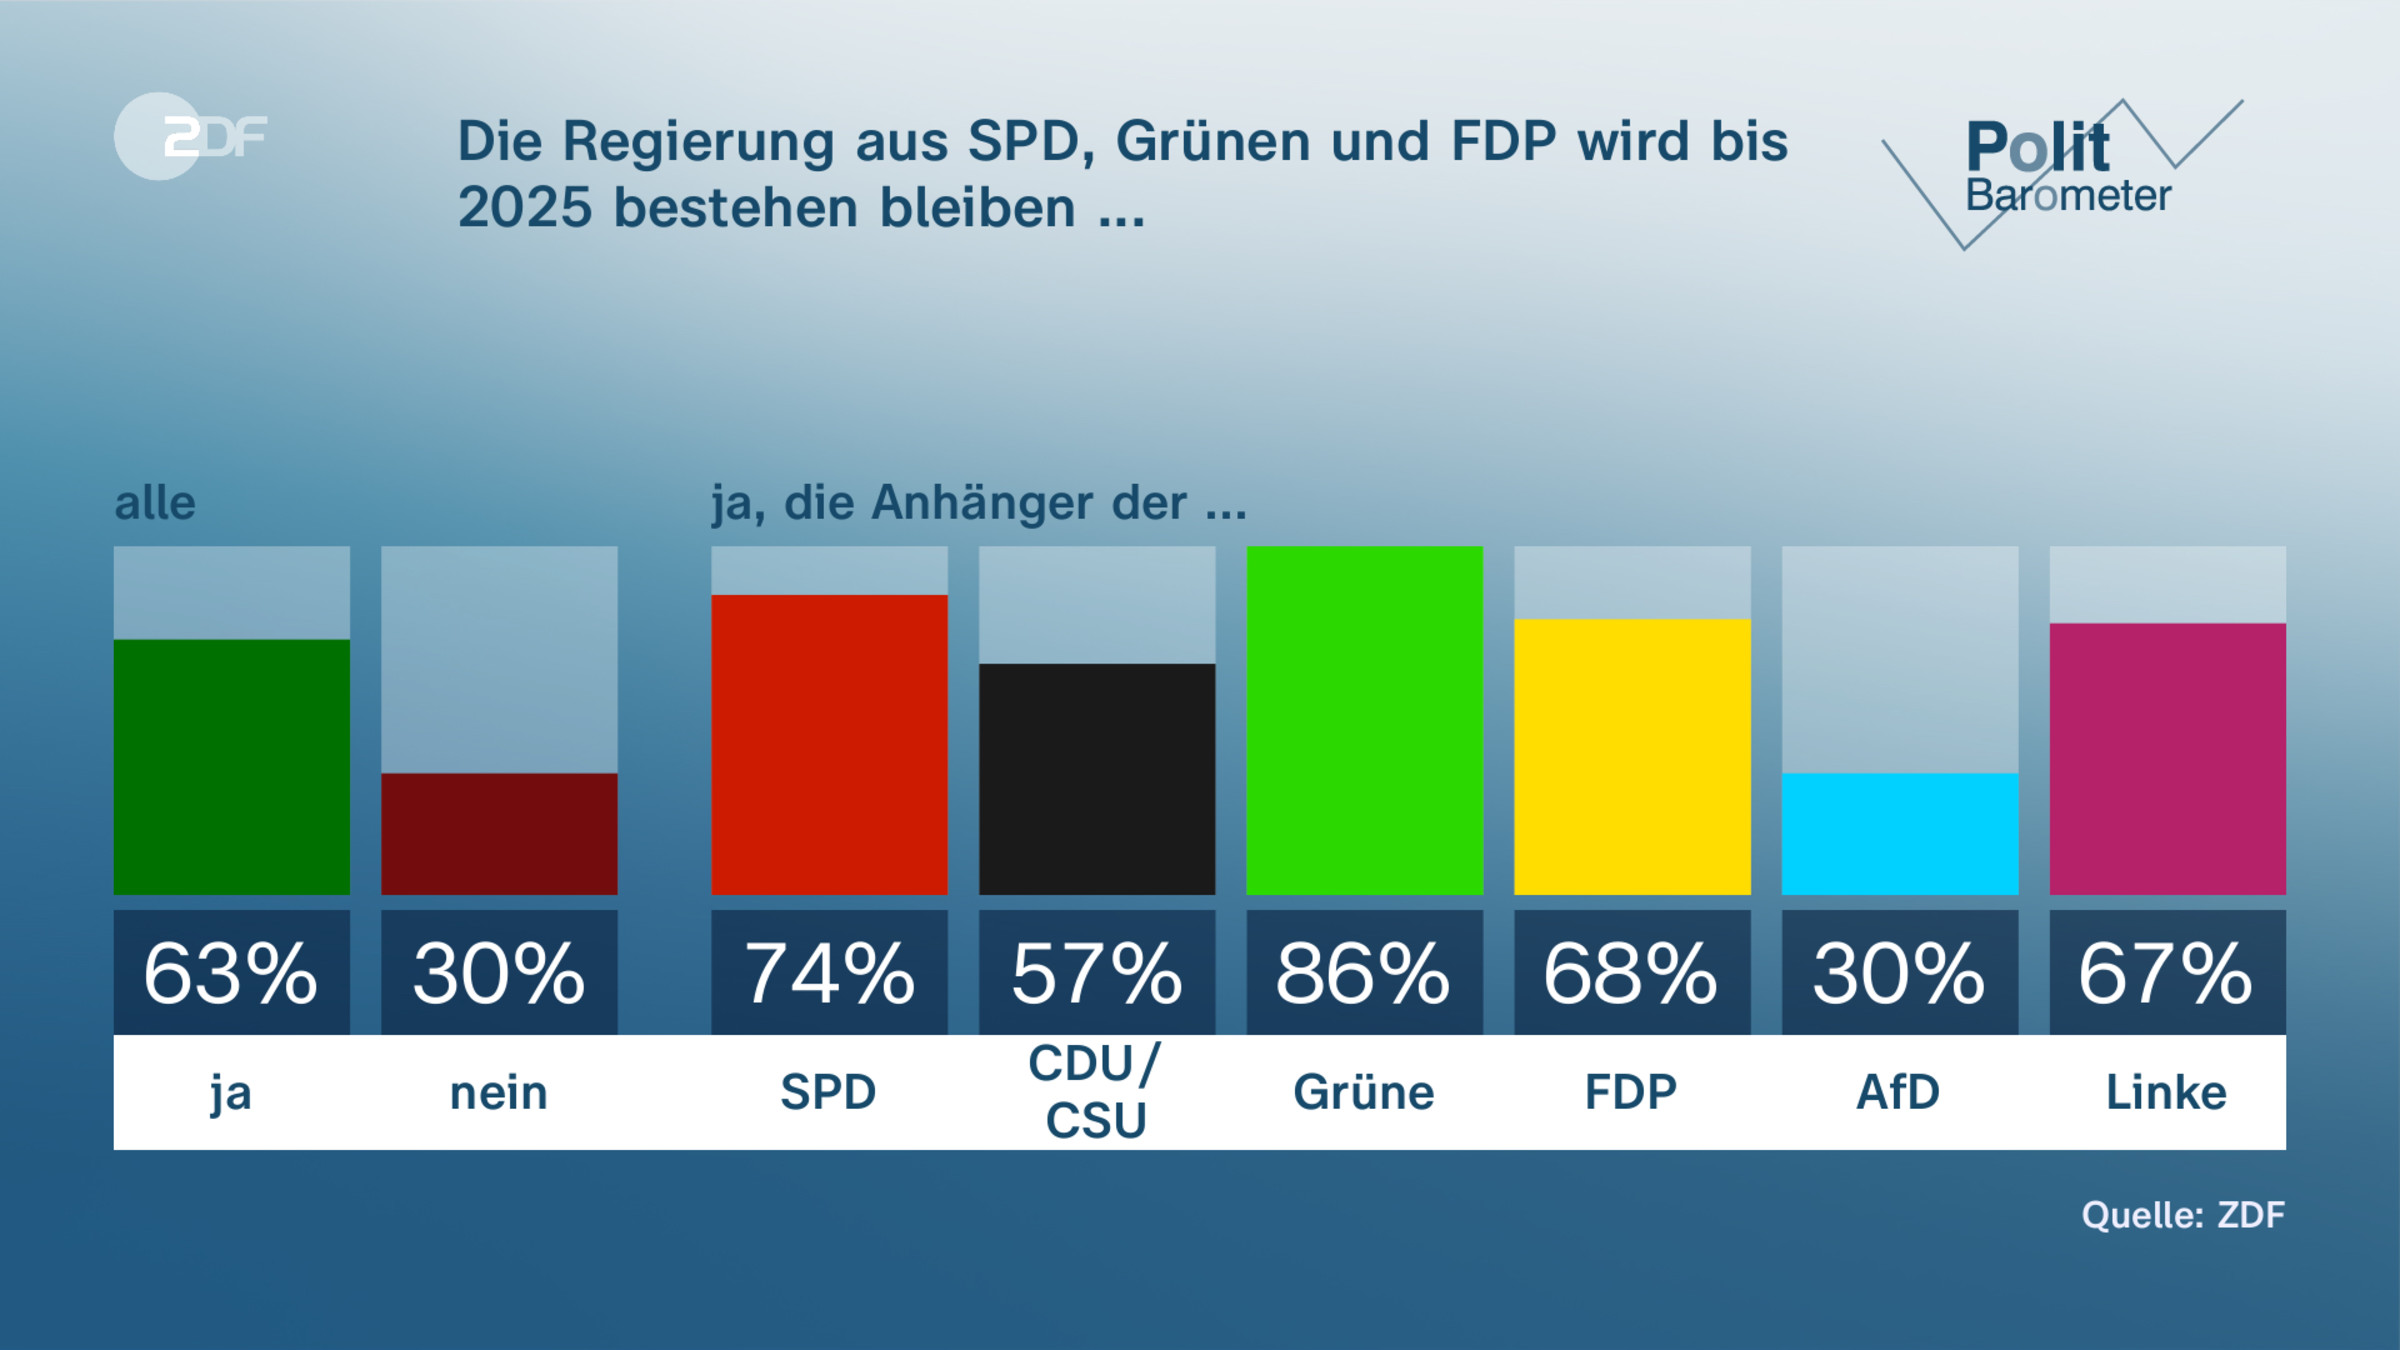 Die Regierung aus SPD, Grünen und FDP wird bis 2025 bestehen bleiben ...